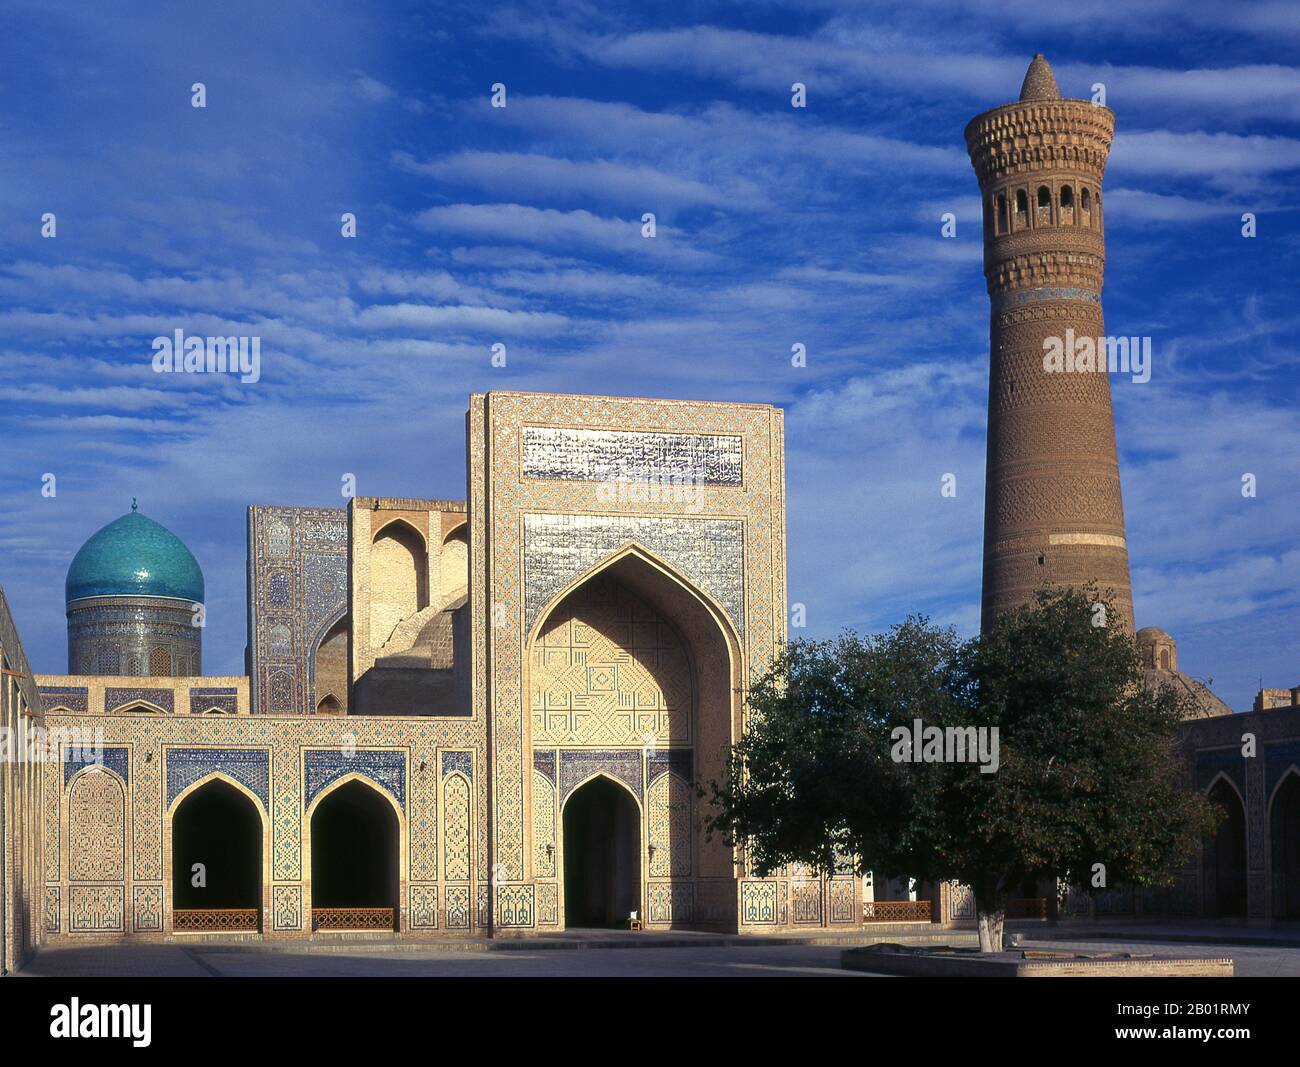 Uzbekistan: Il cortile interno della moschea e minareto di Kalyan o Kalon, parte del complesso po-i-Kalyan, Bukhara. La Moschea Kalyan è la moschea congregazionale di Bukhara o Moschea del venerdì. Fu costruita nel XVI secolo sul sito di una vecchia moschea distrutta da Gengis Khan. Il minareto di Kalyan o Minâra-i Kalân (Pesiano/Tagik per il "grande Minareto") fa parte del complesso della moschea po-i-Kalyan ed è stato progettato da Bako e costruito dal sovrano di Qarakhanide Arslan Khan nel 1127. Il minareto è realizzato sotto forma di una torre di mattoni a pilastri circolari, che si restringe verso l'alto. Foto Stock